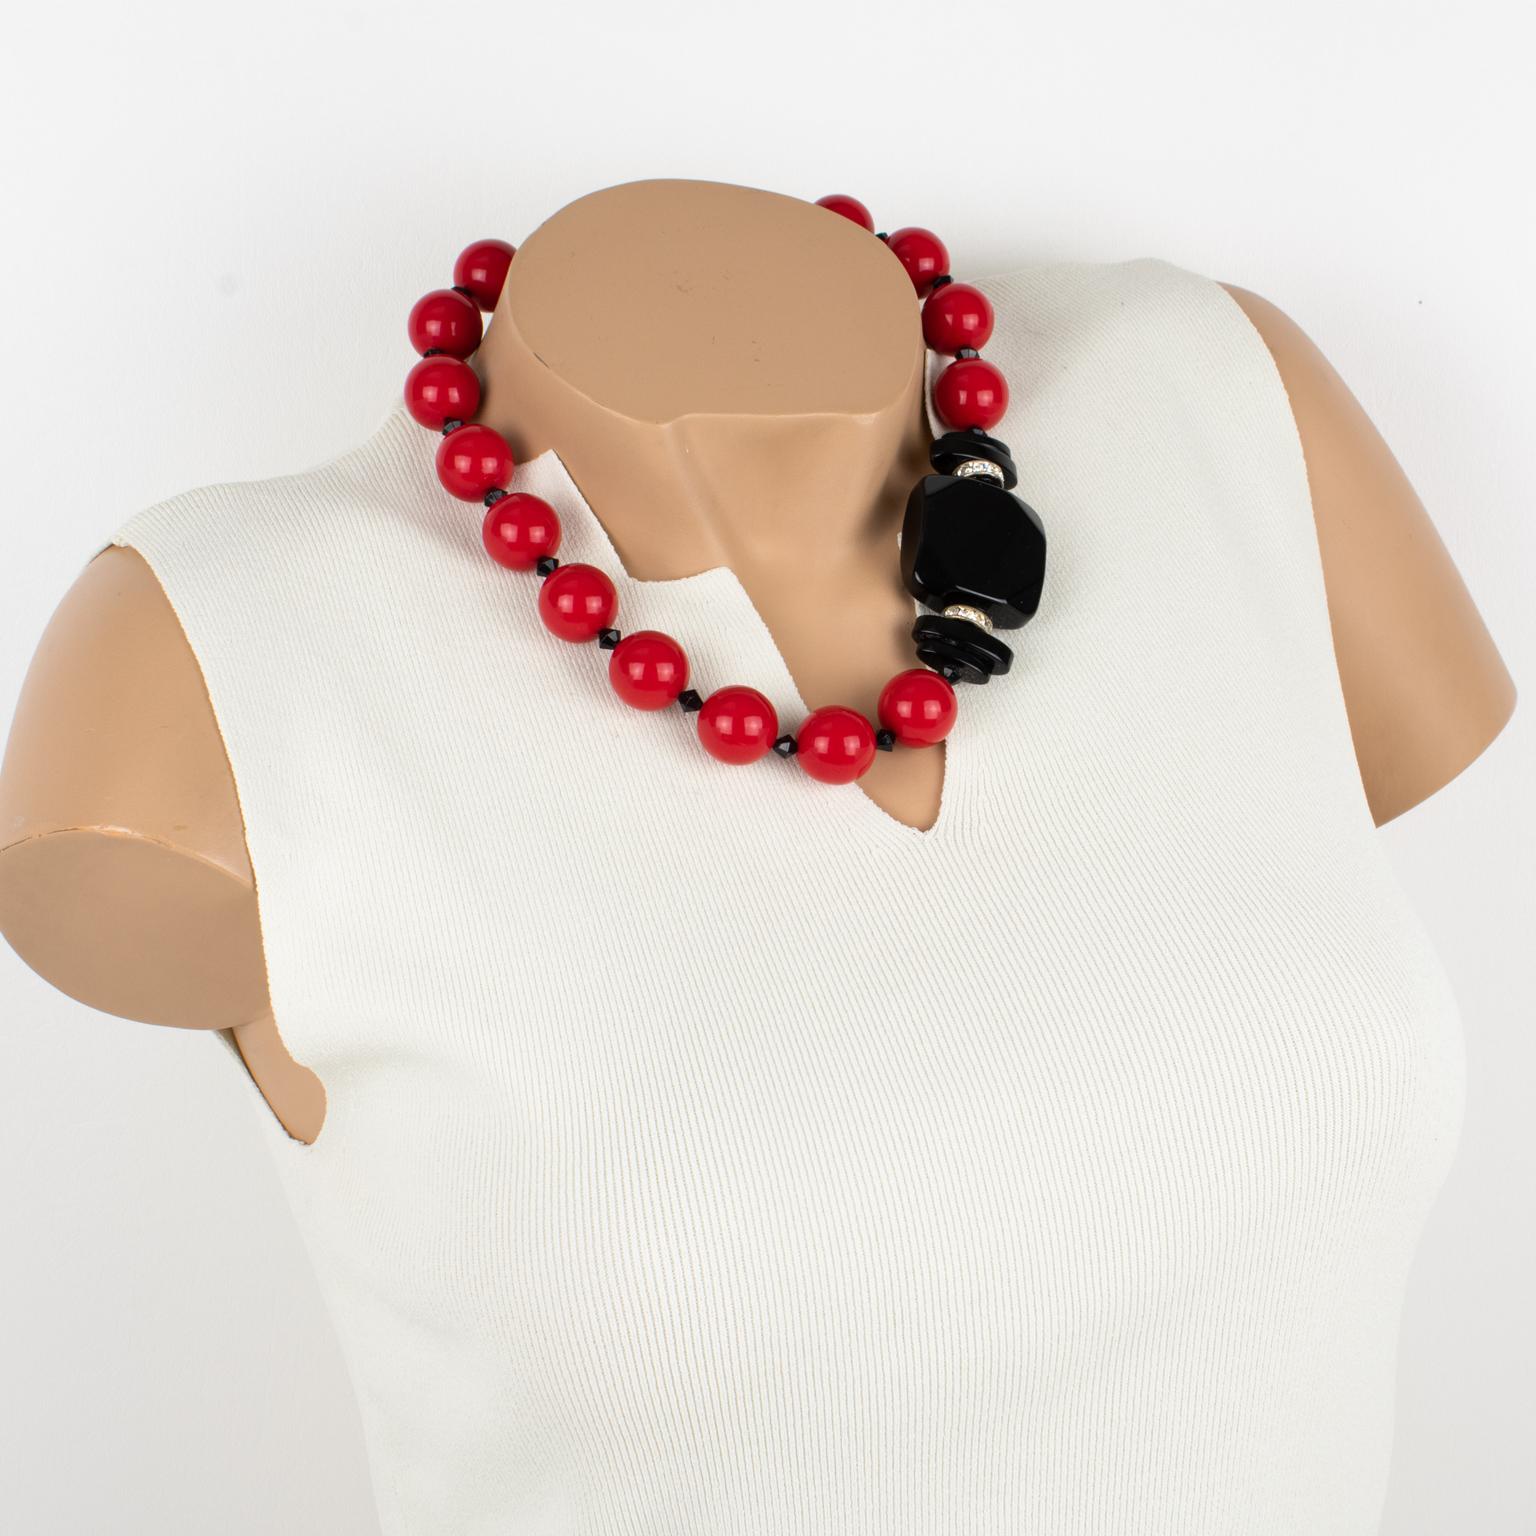 Dieses klassische, in Italien gefertigte Angela Caputi Halsband aus Kunstharz wirkt durch den Kontrast von Rot und Schwarz. Diese Halskette besteht aus klobigen runden Perlen mit einer quadratischen Perle auf der Seite, die mit Strasssteinen